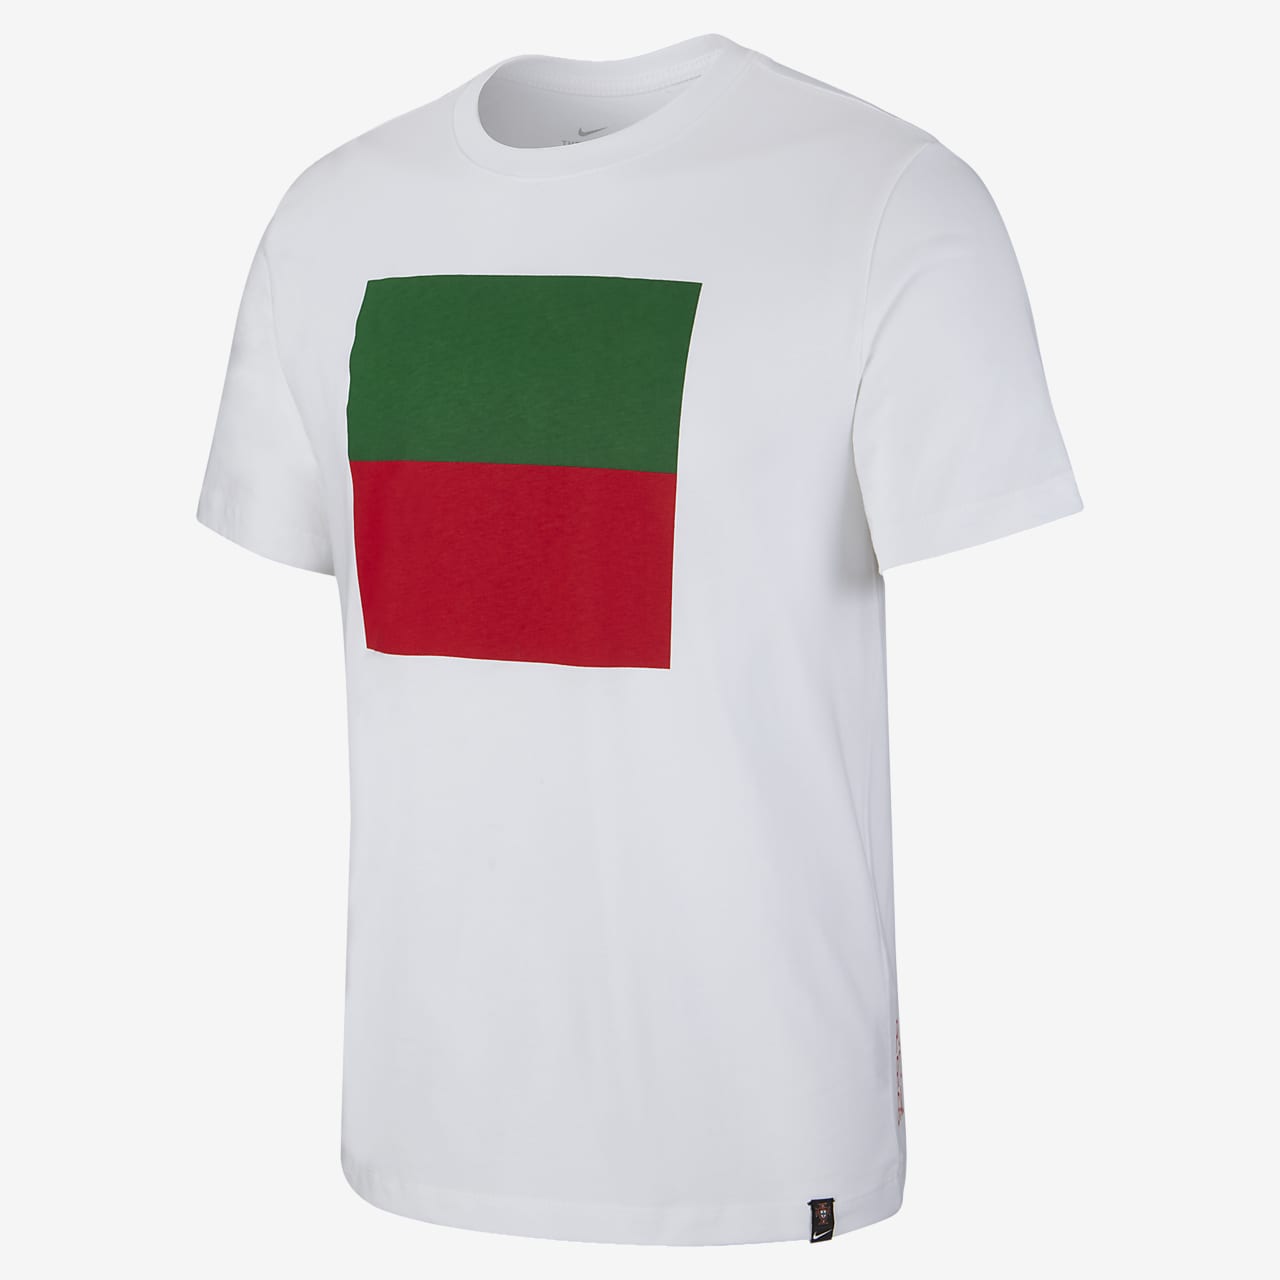 Portugal Men's Soccer T-Shirt